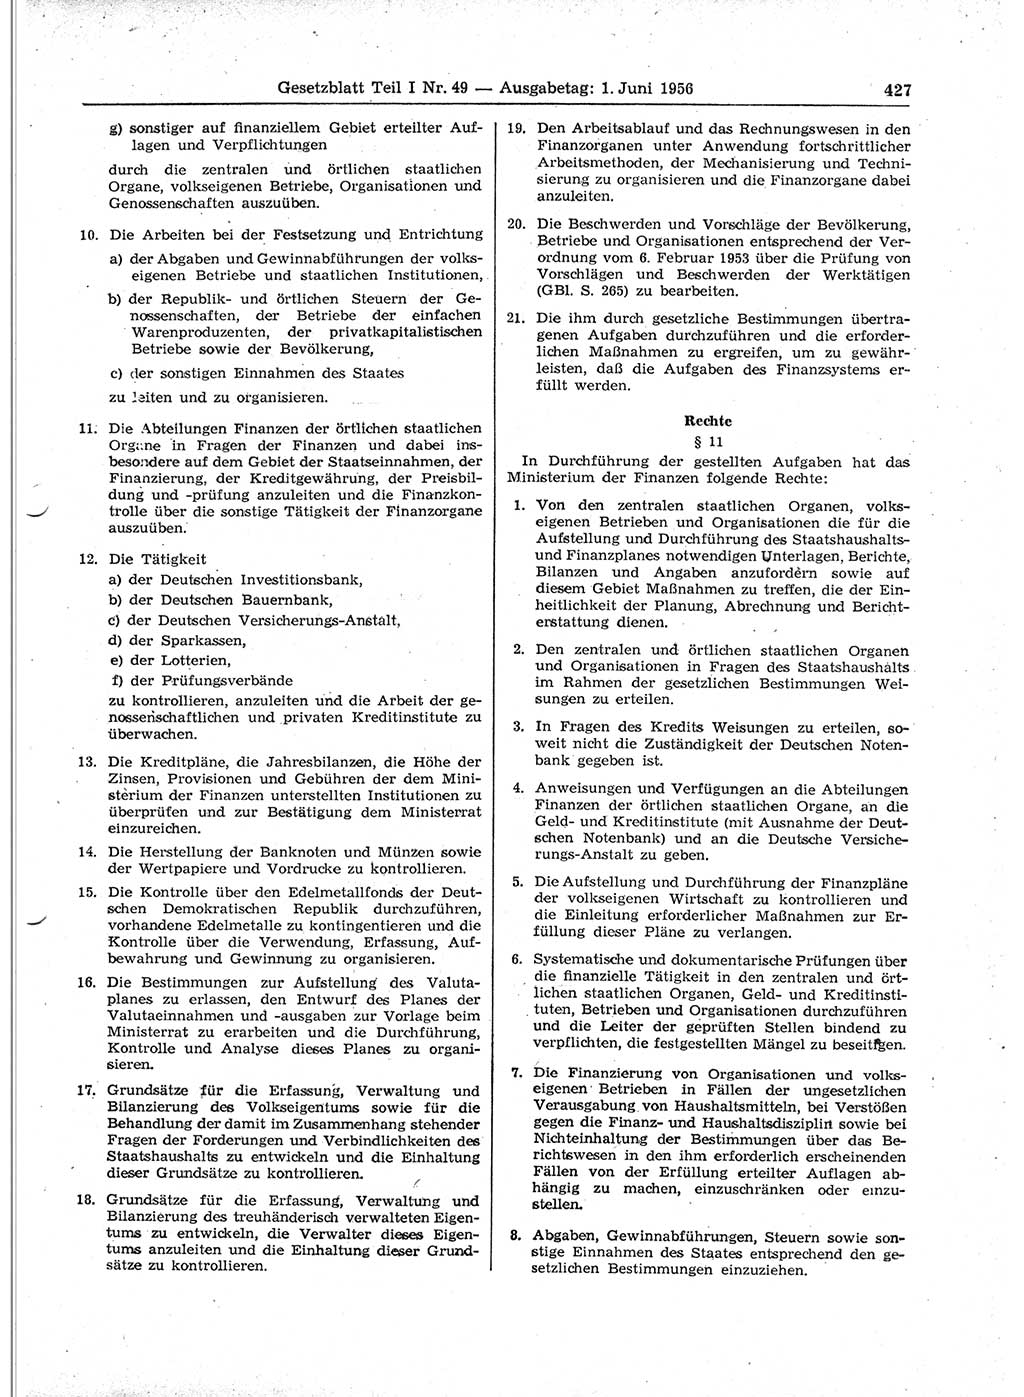 Gesetzblatt (GBl.) der Deutschen Demokratischen Republik (DDR) Teil Ⅰ 1956, Seite 427 (GBl. DDR Ⅰ 1956, S. 427)